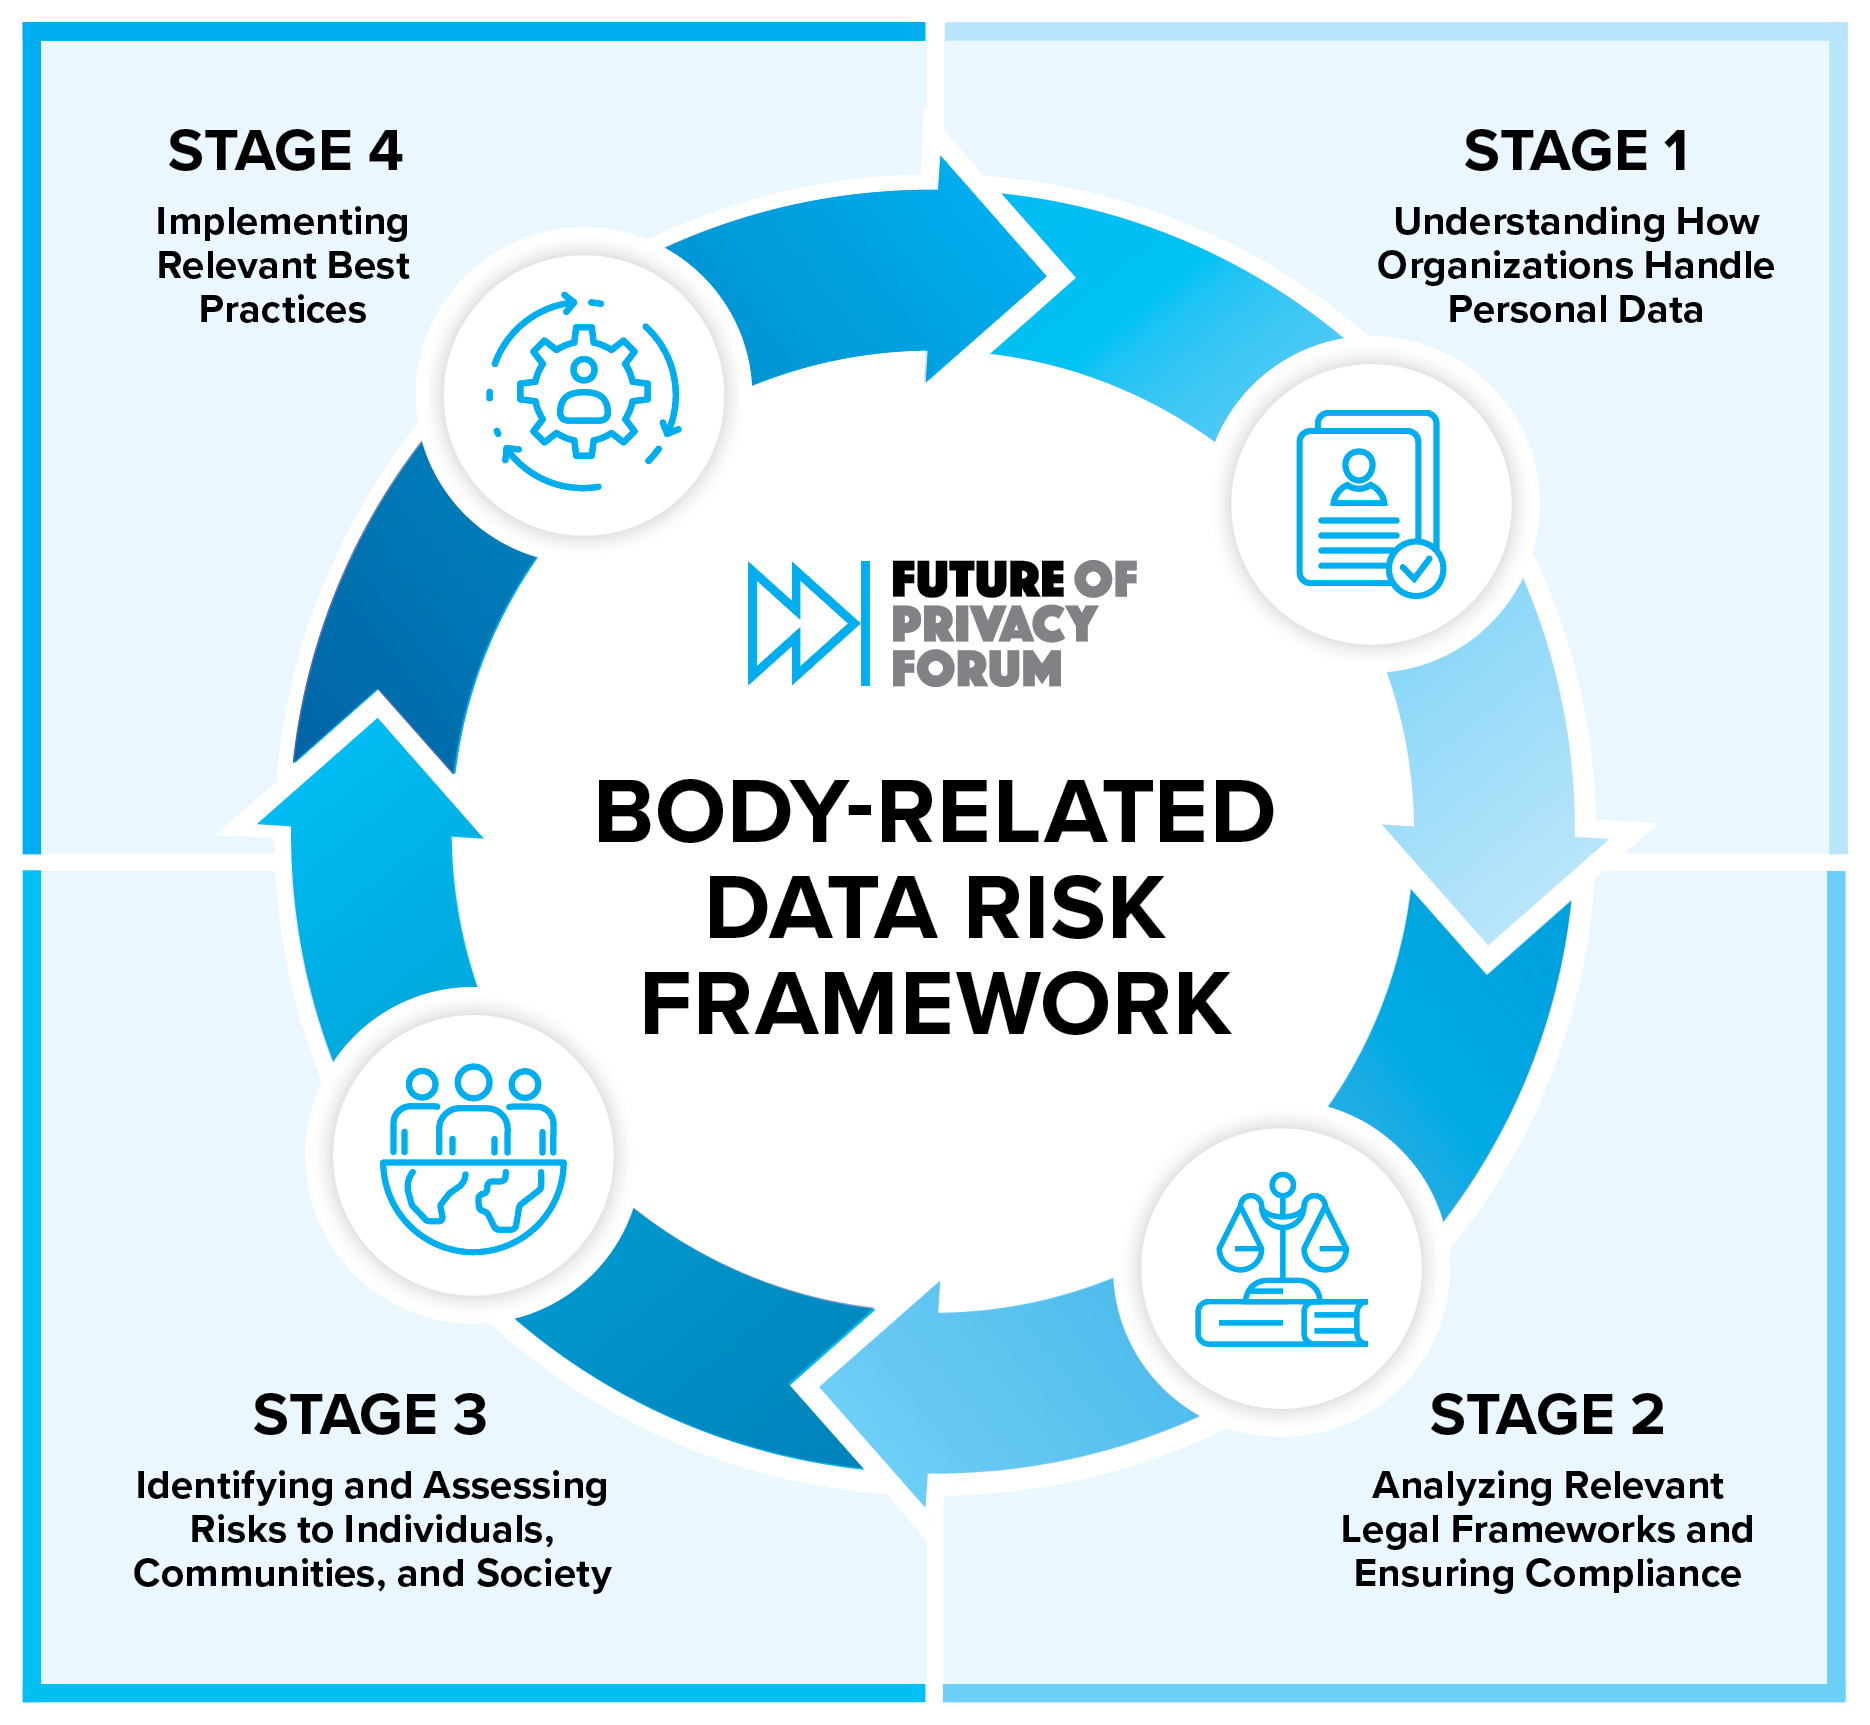 Body-related data risk framework